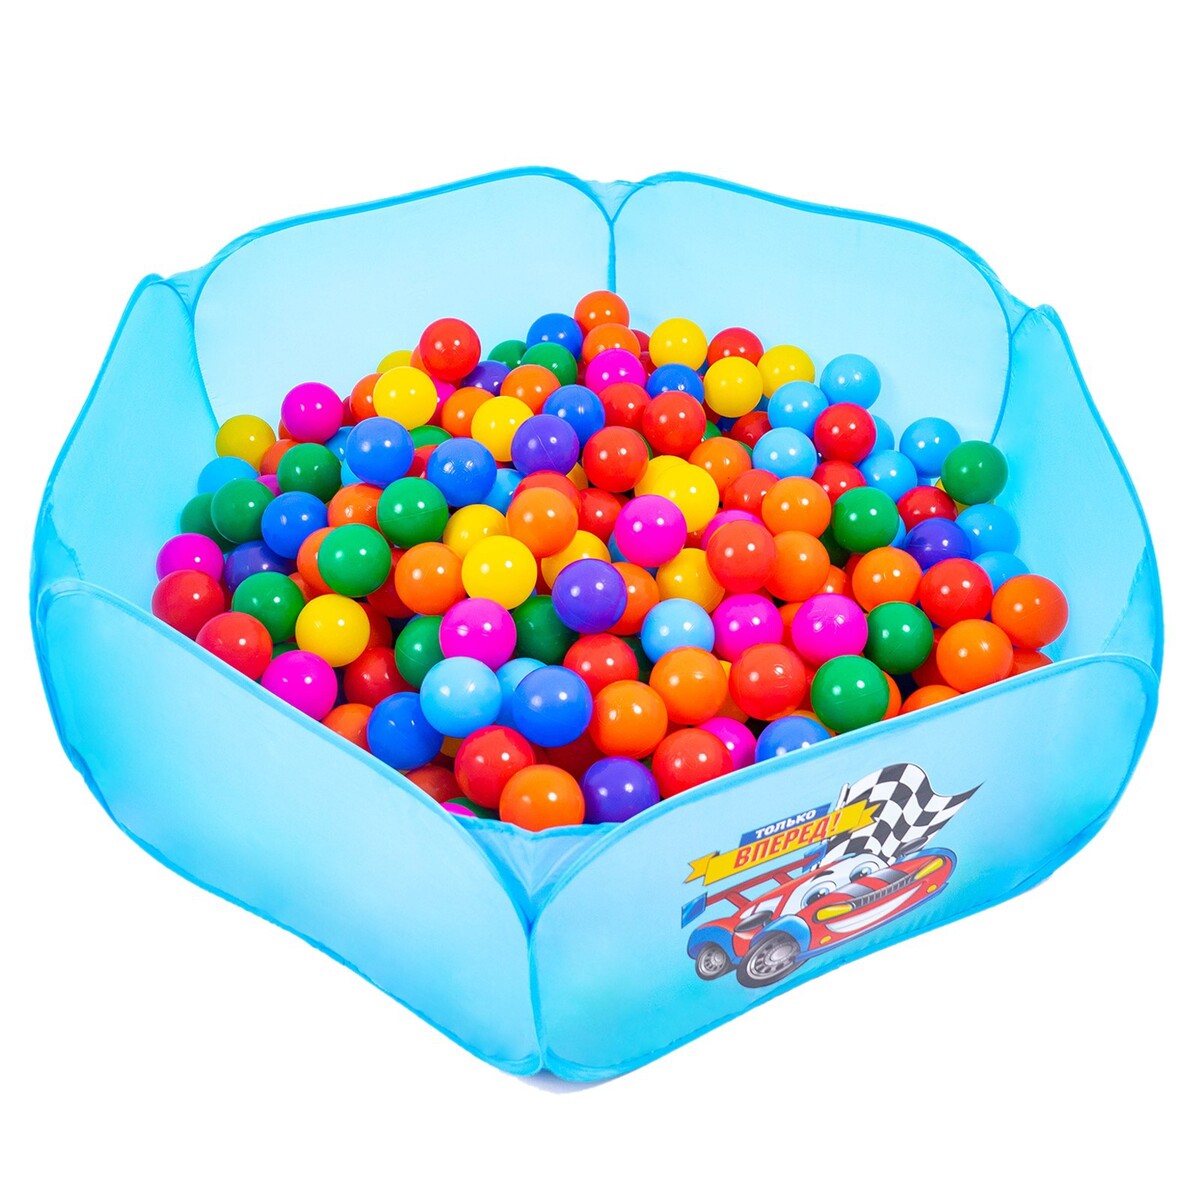 Шарики для сухого бассейна с рисунком, диаметр шара 7,5 см, набор 30 штук, разноцветные hotenok шарики для сухого бассейна мыльные пузыри 7 см 150 шт